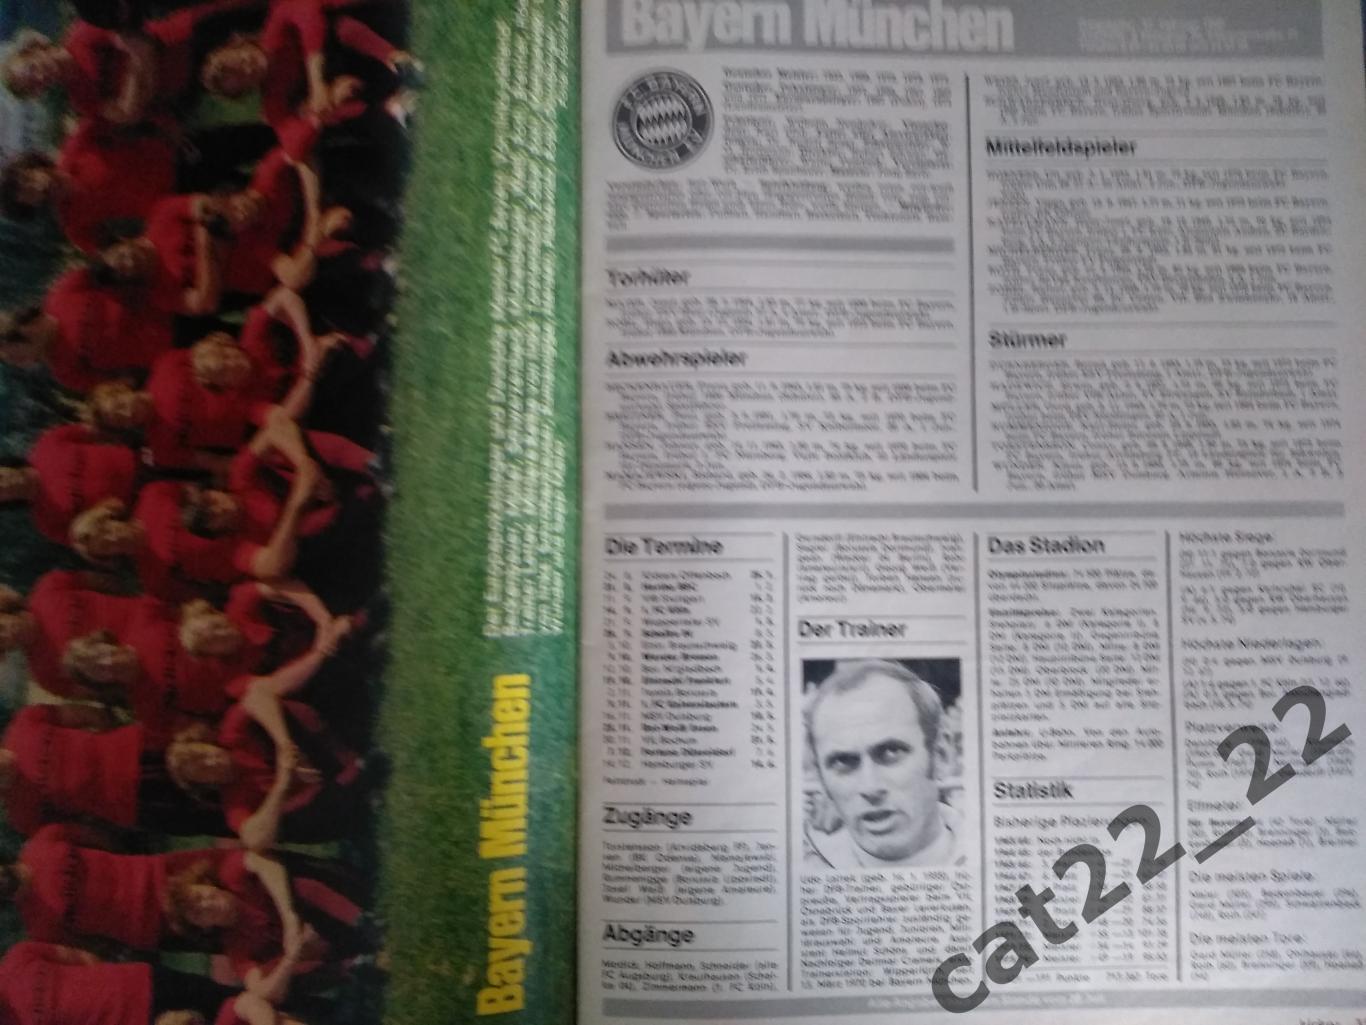 Журнал Кикер/Kicker. Полный номер. Все постеры. Германия. Сезон 1974/1975 1